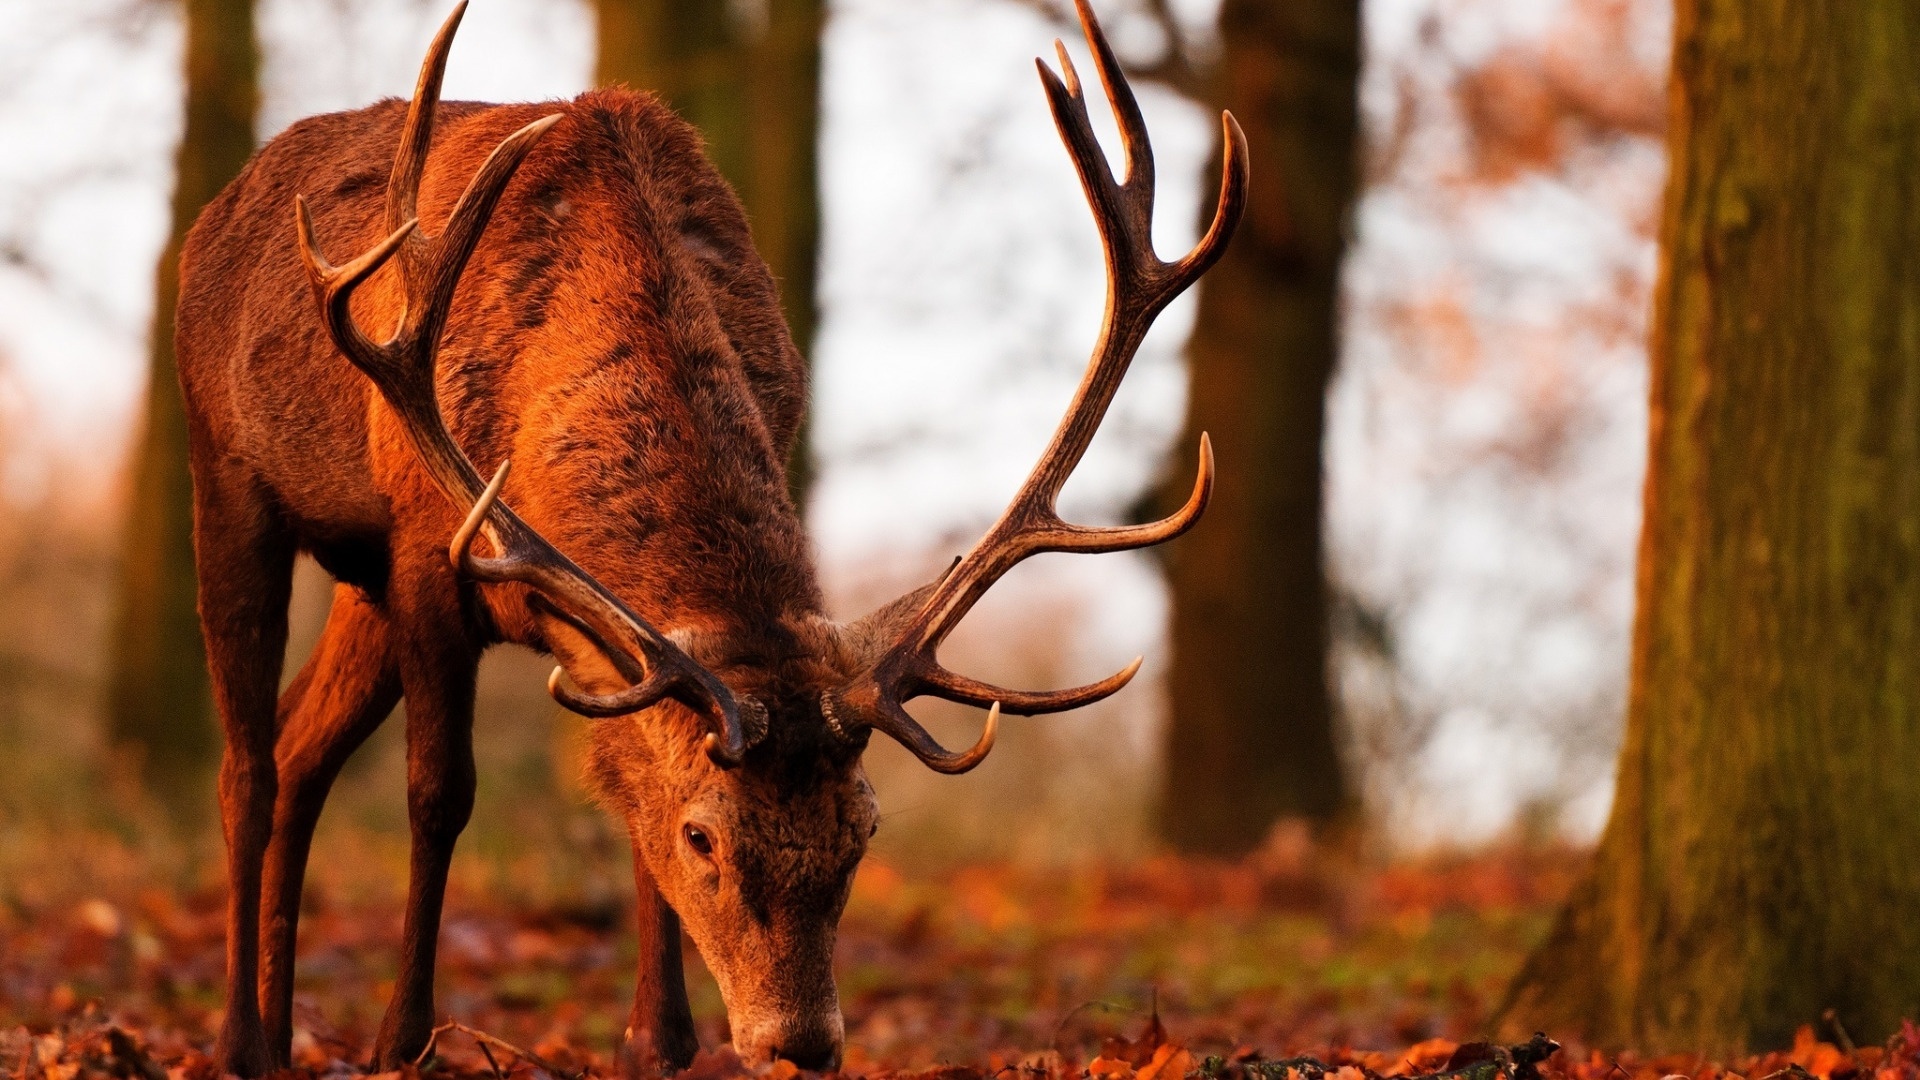 Deer In The Forest Desktop Wallpaper